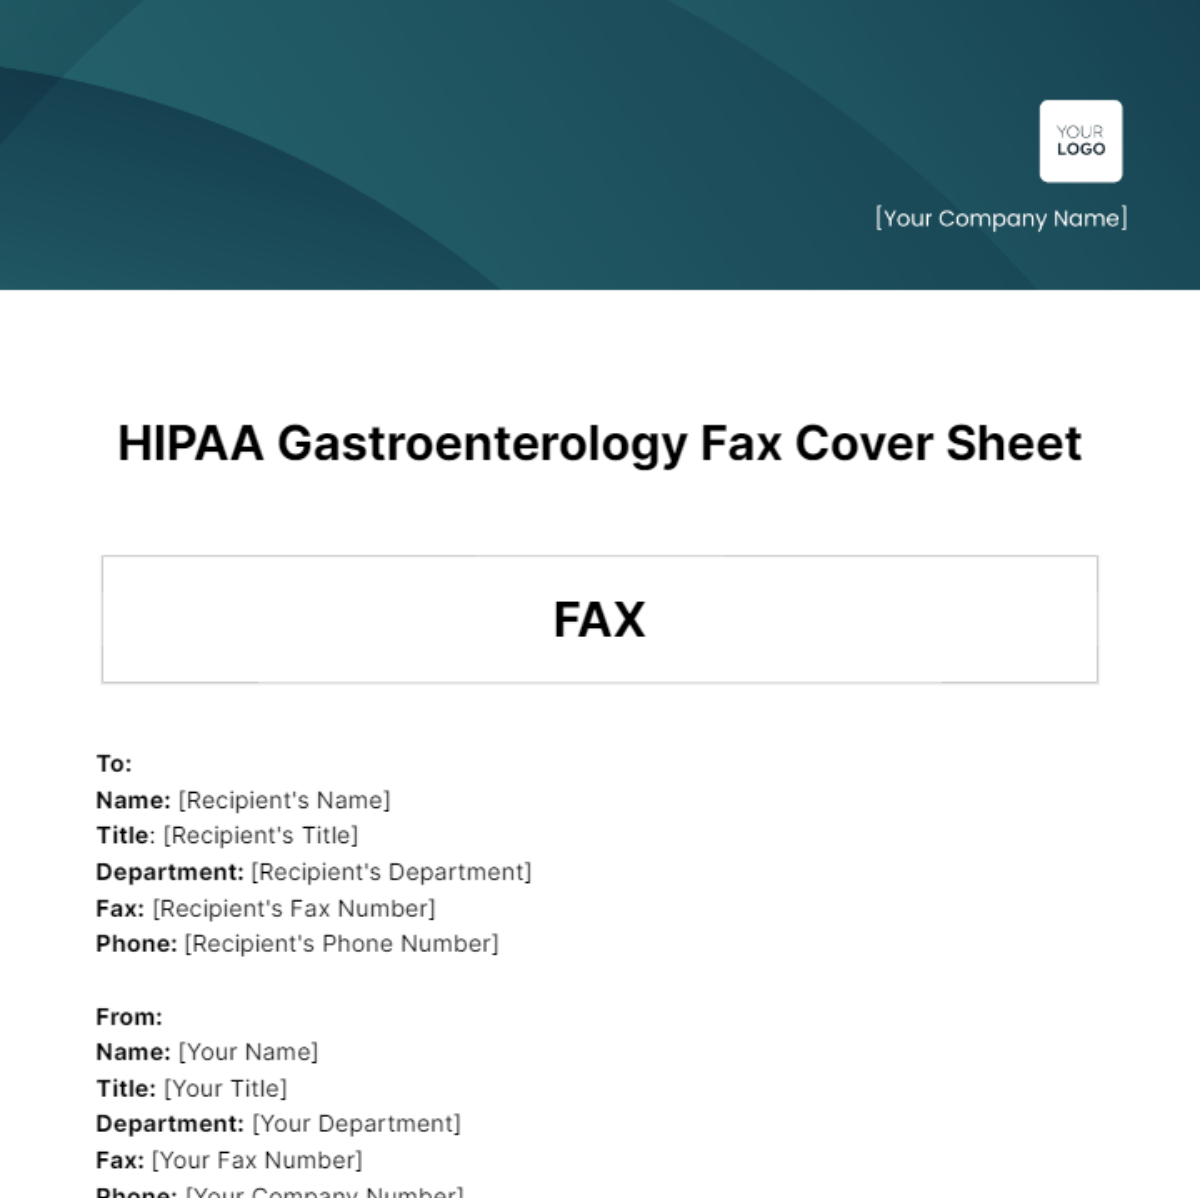 HIPAA Gastroenterology Fax Cover Sheet Template